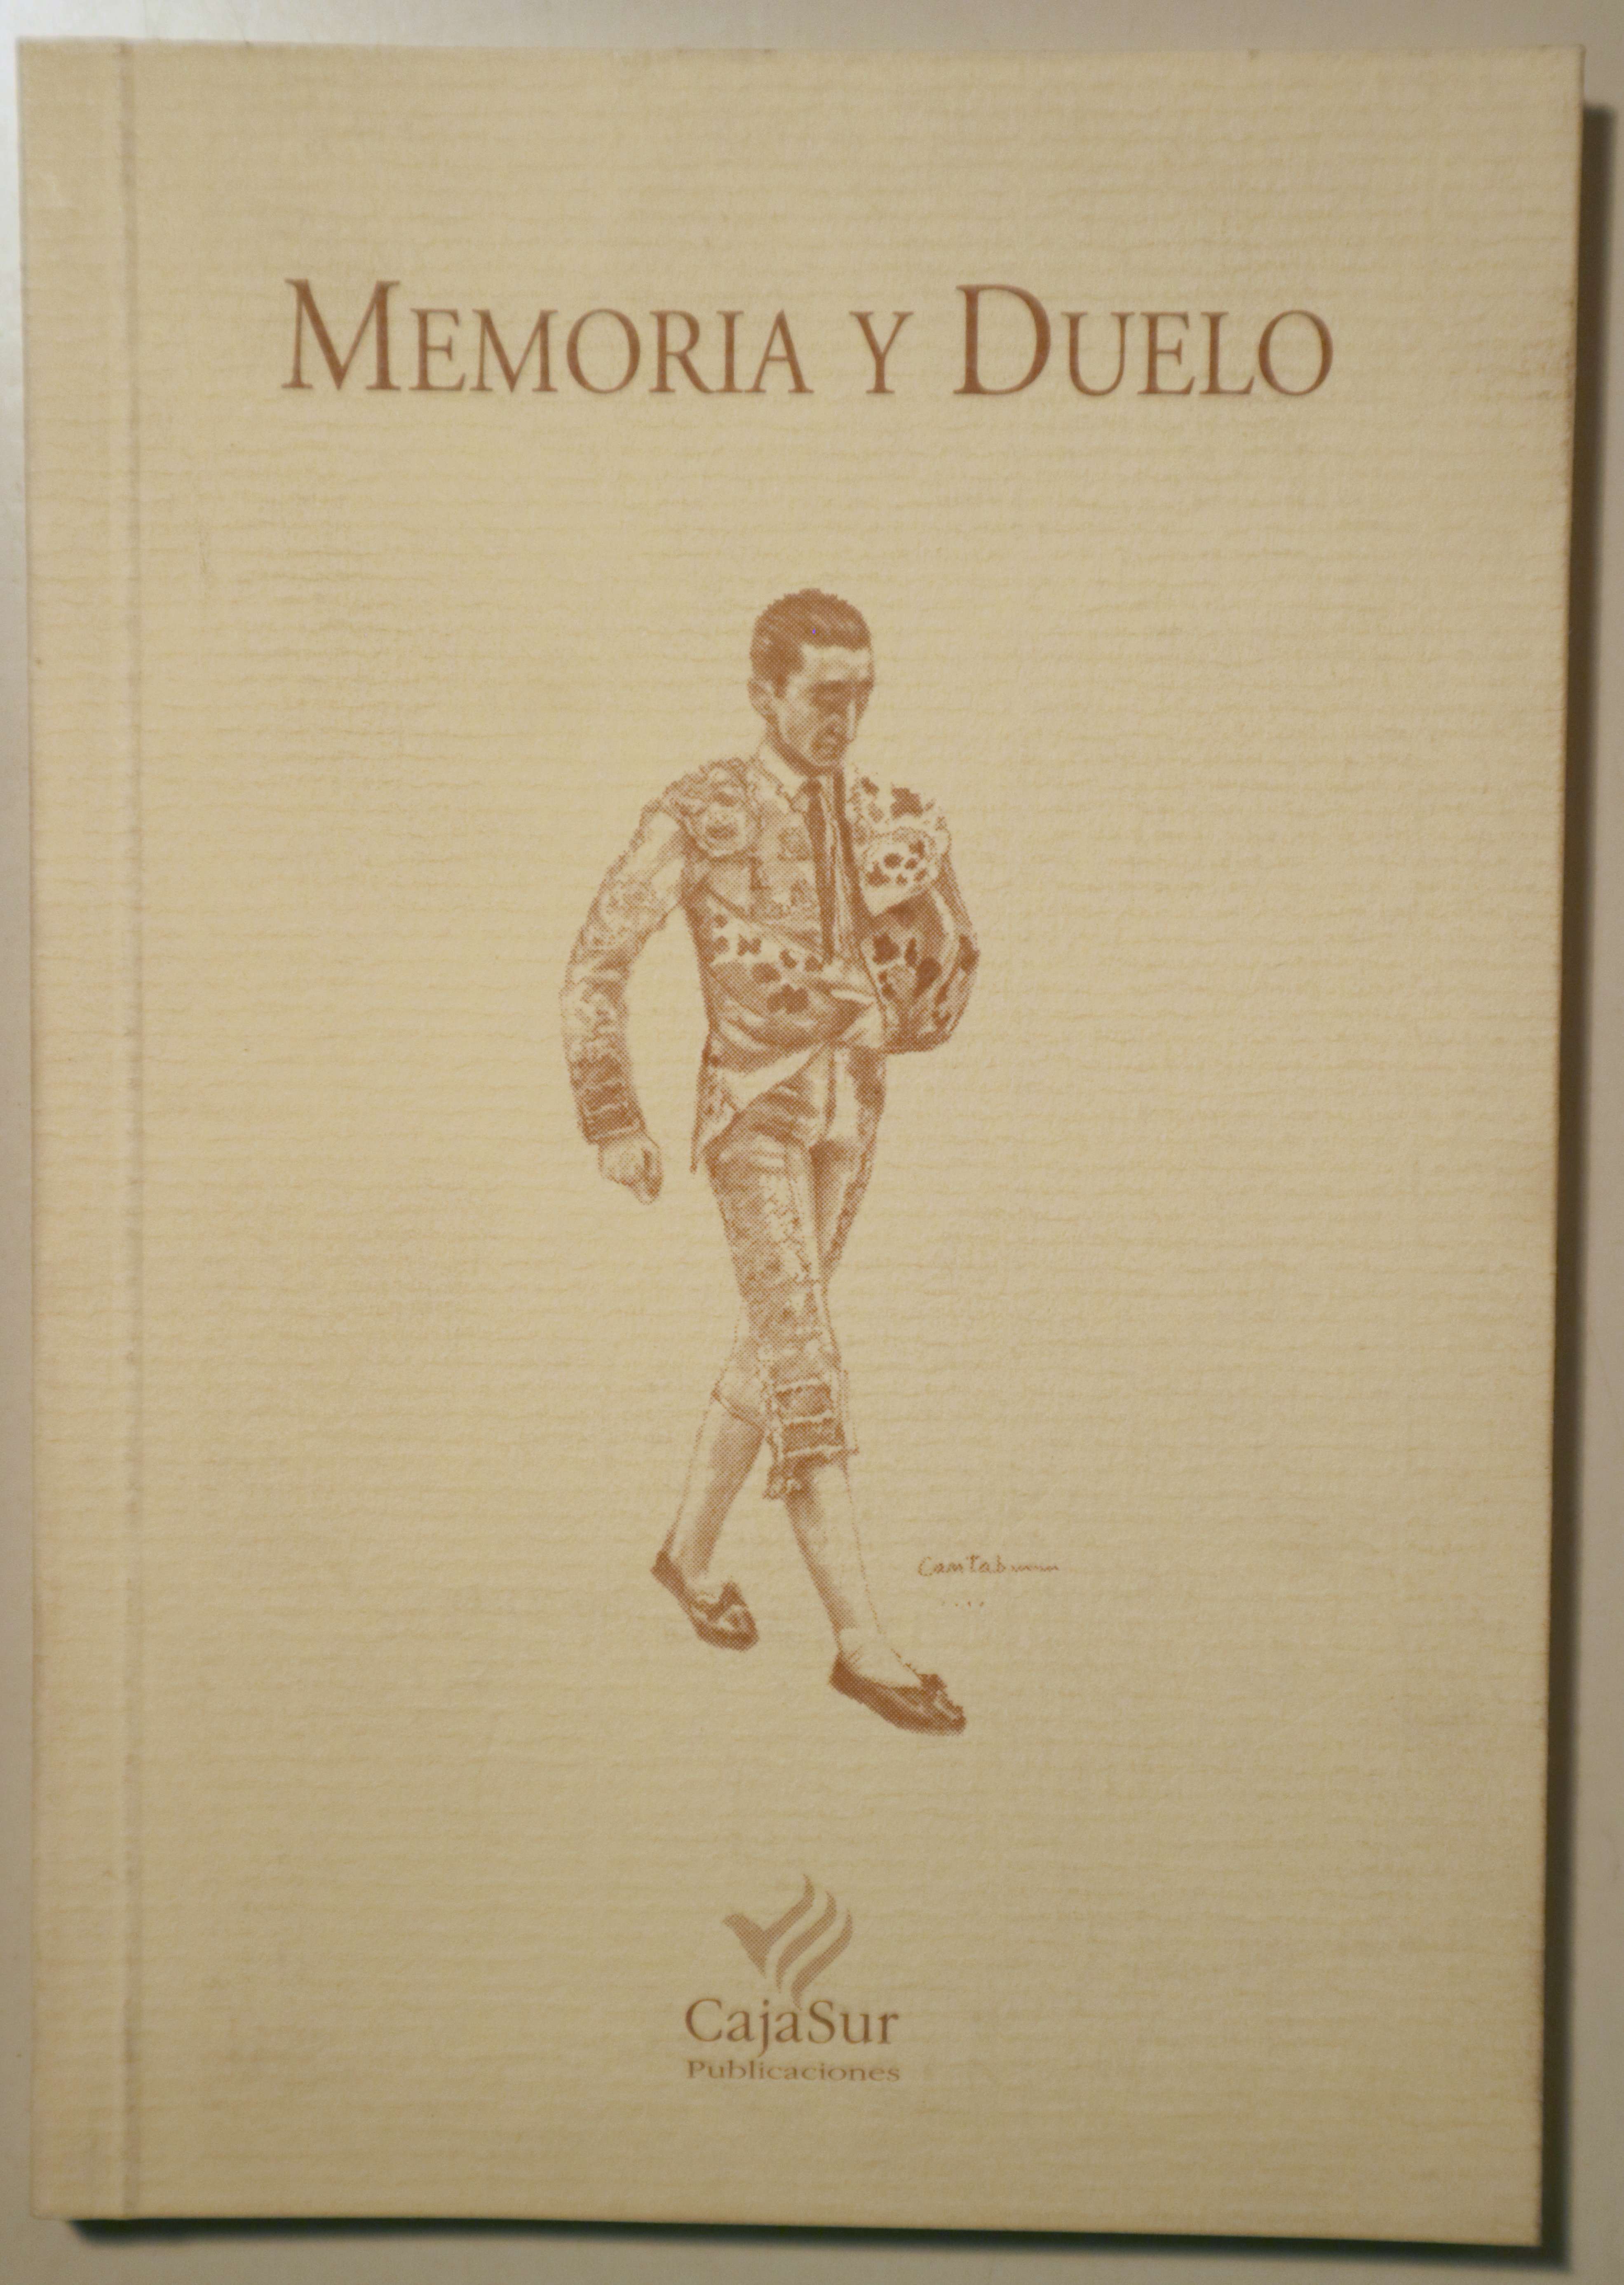 MEMORIA Y DUELO - Córdoba 1997